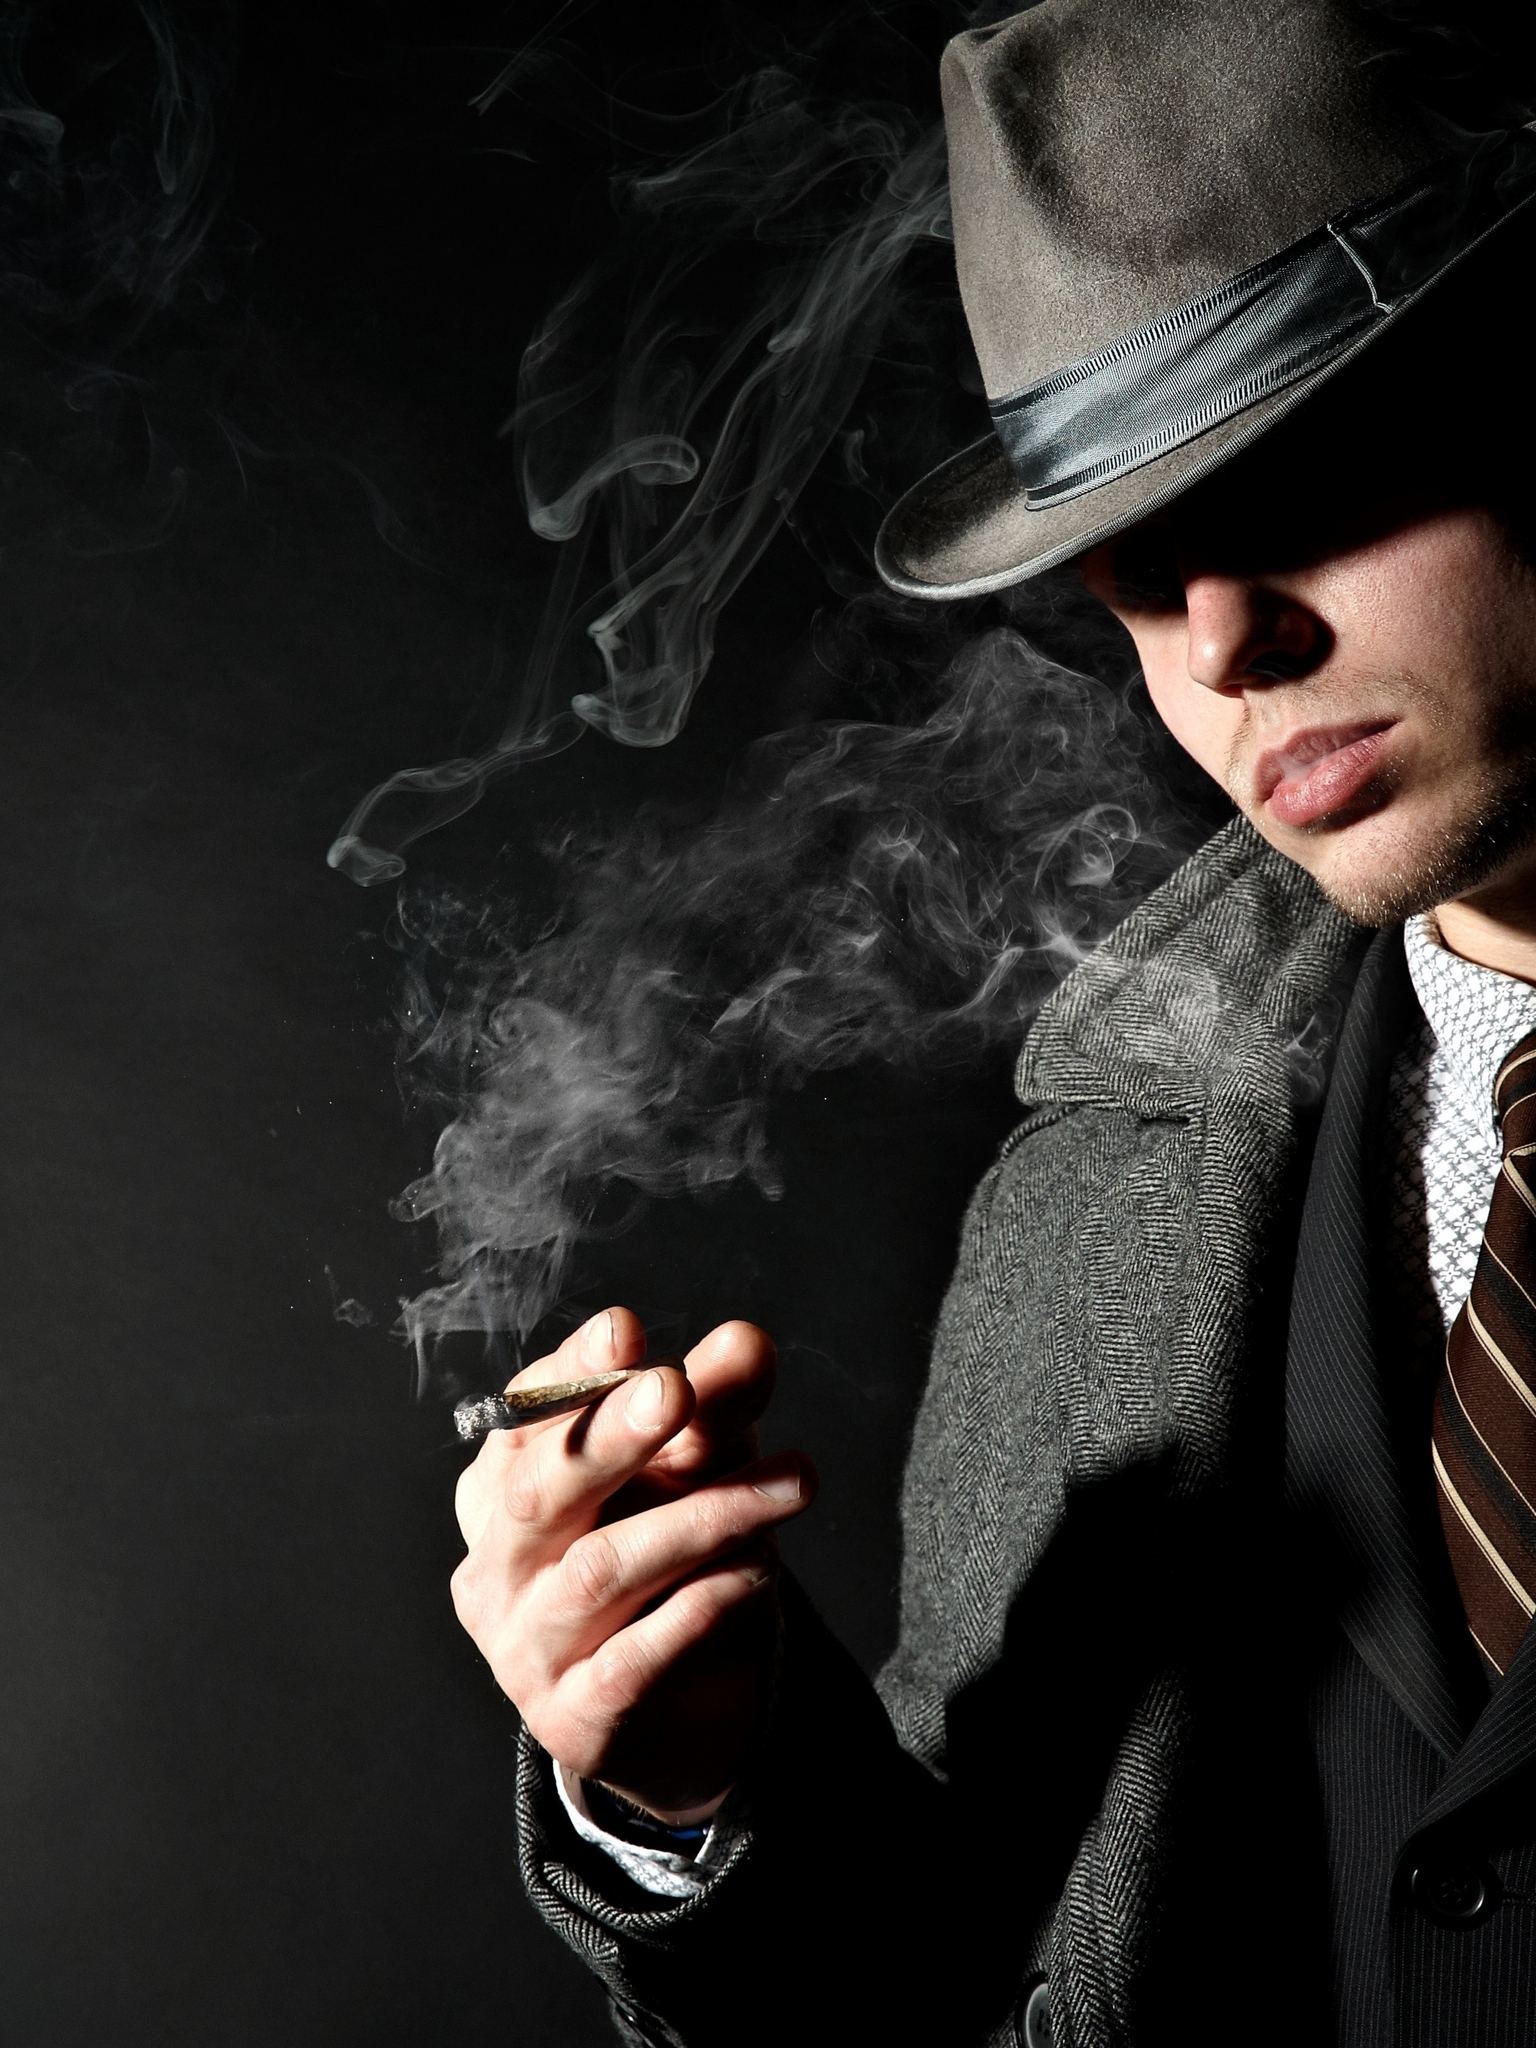 Image: Male, coat, tie, hat, smoking, cigar, smoke